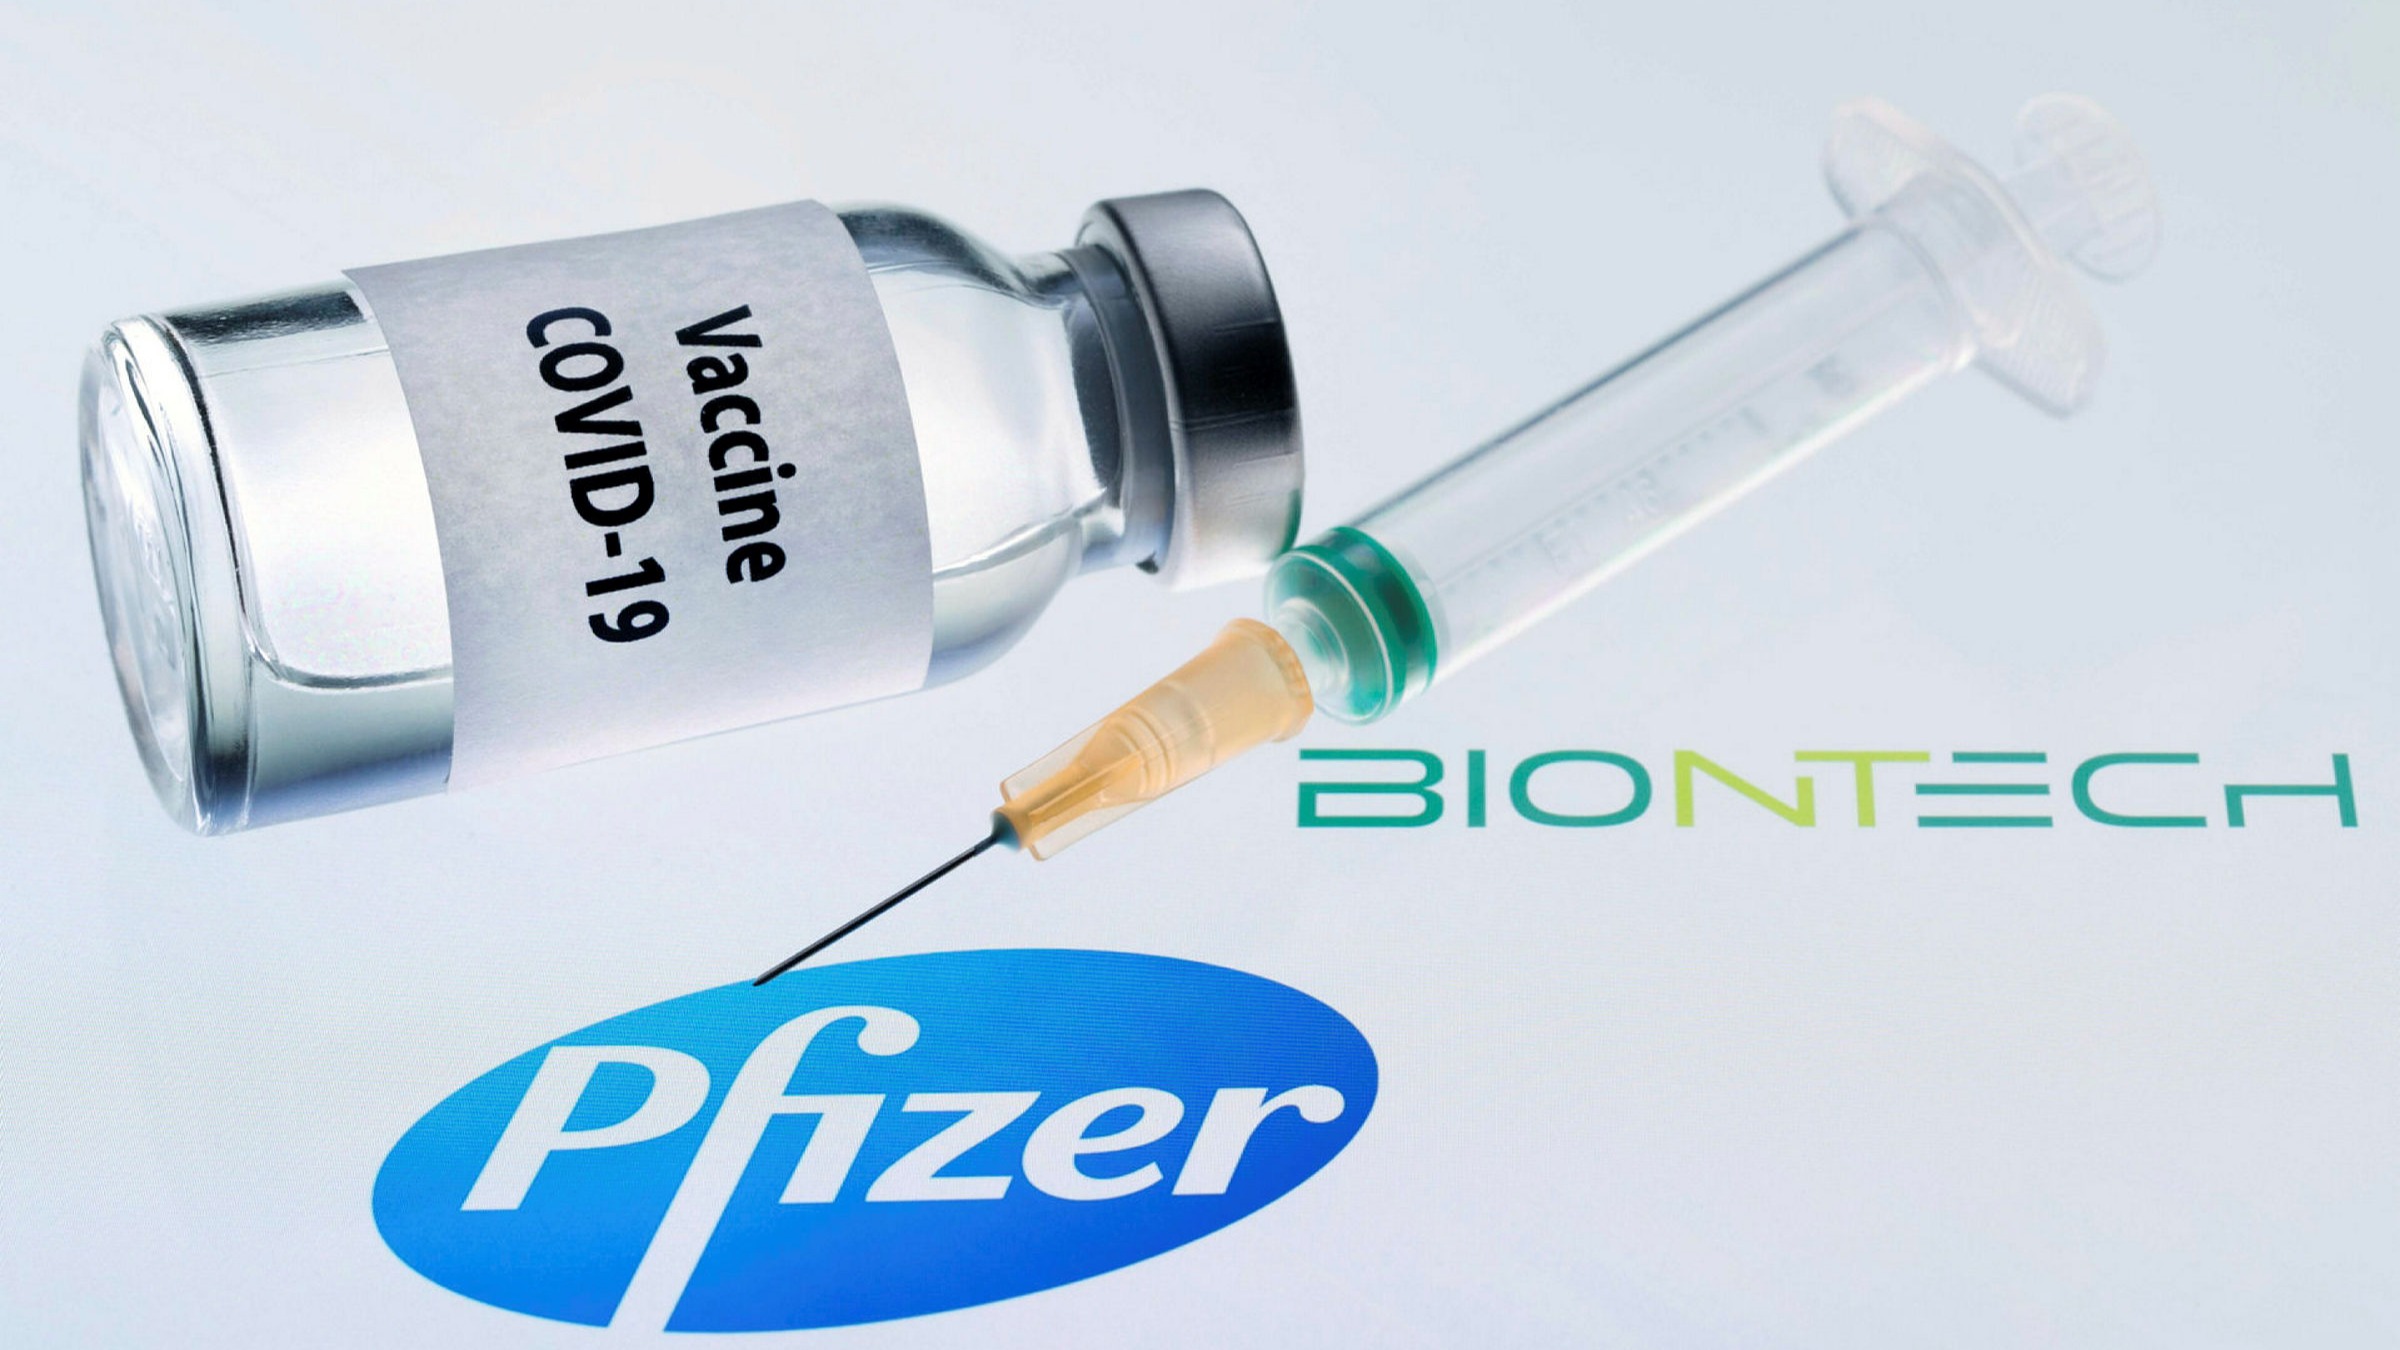 Pravi vihar na Twitterju, ker Slovenija decembra ni izkoristila možnosti nakupa pol milijona cepiva BioNTech in Pfizer – Marjan Šarec pravi, da bi bila na mestu “ustavna obtožba”